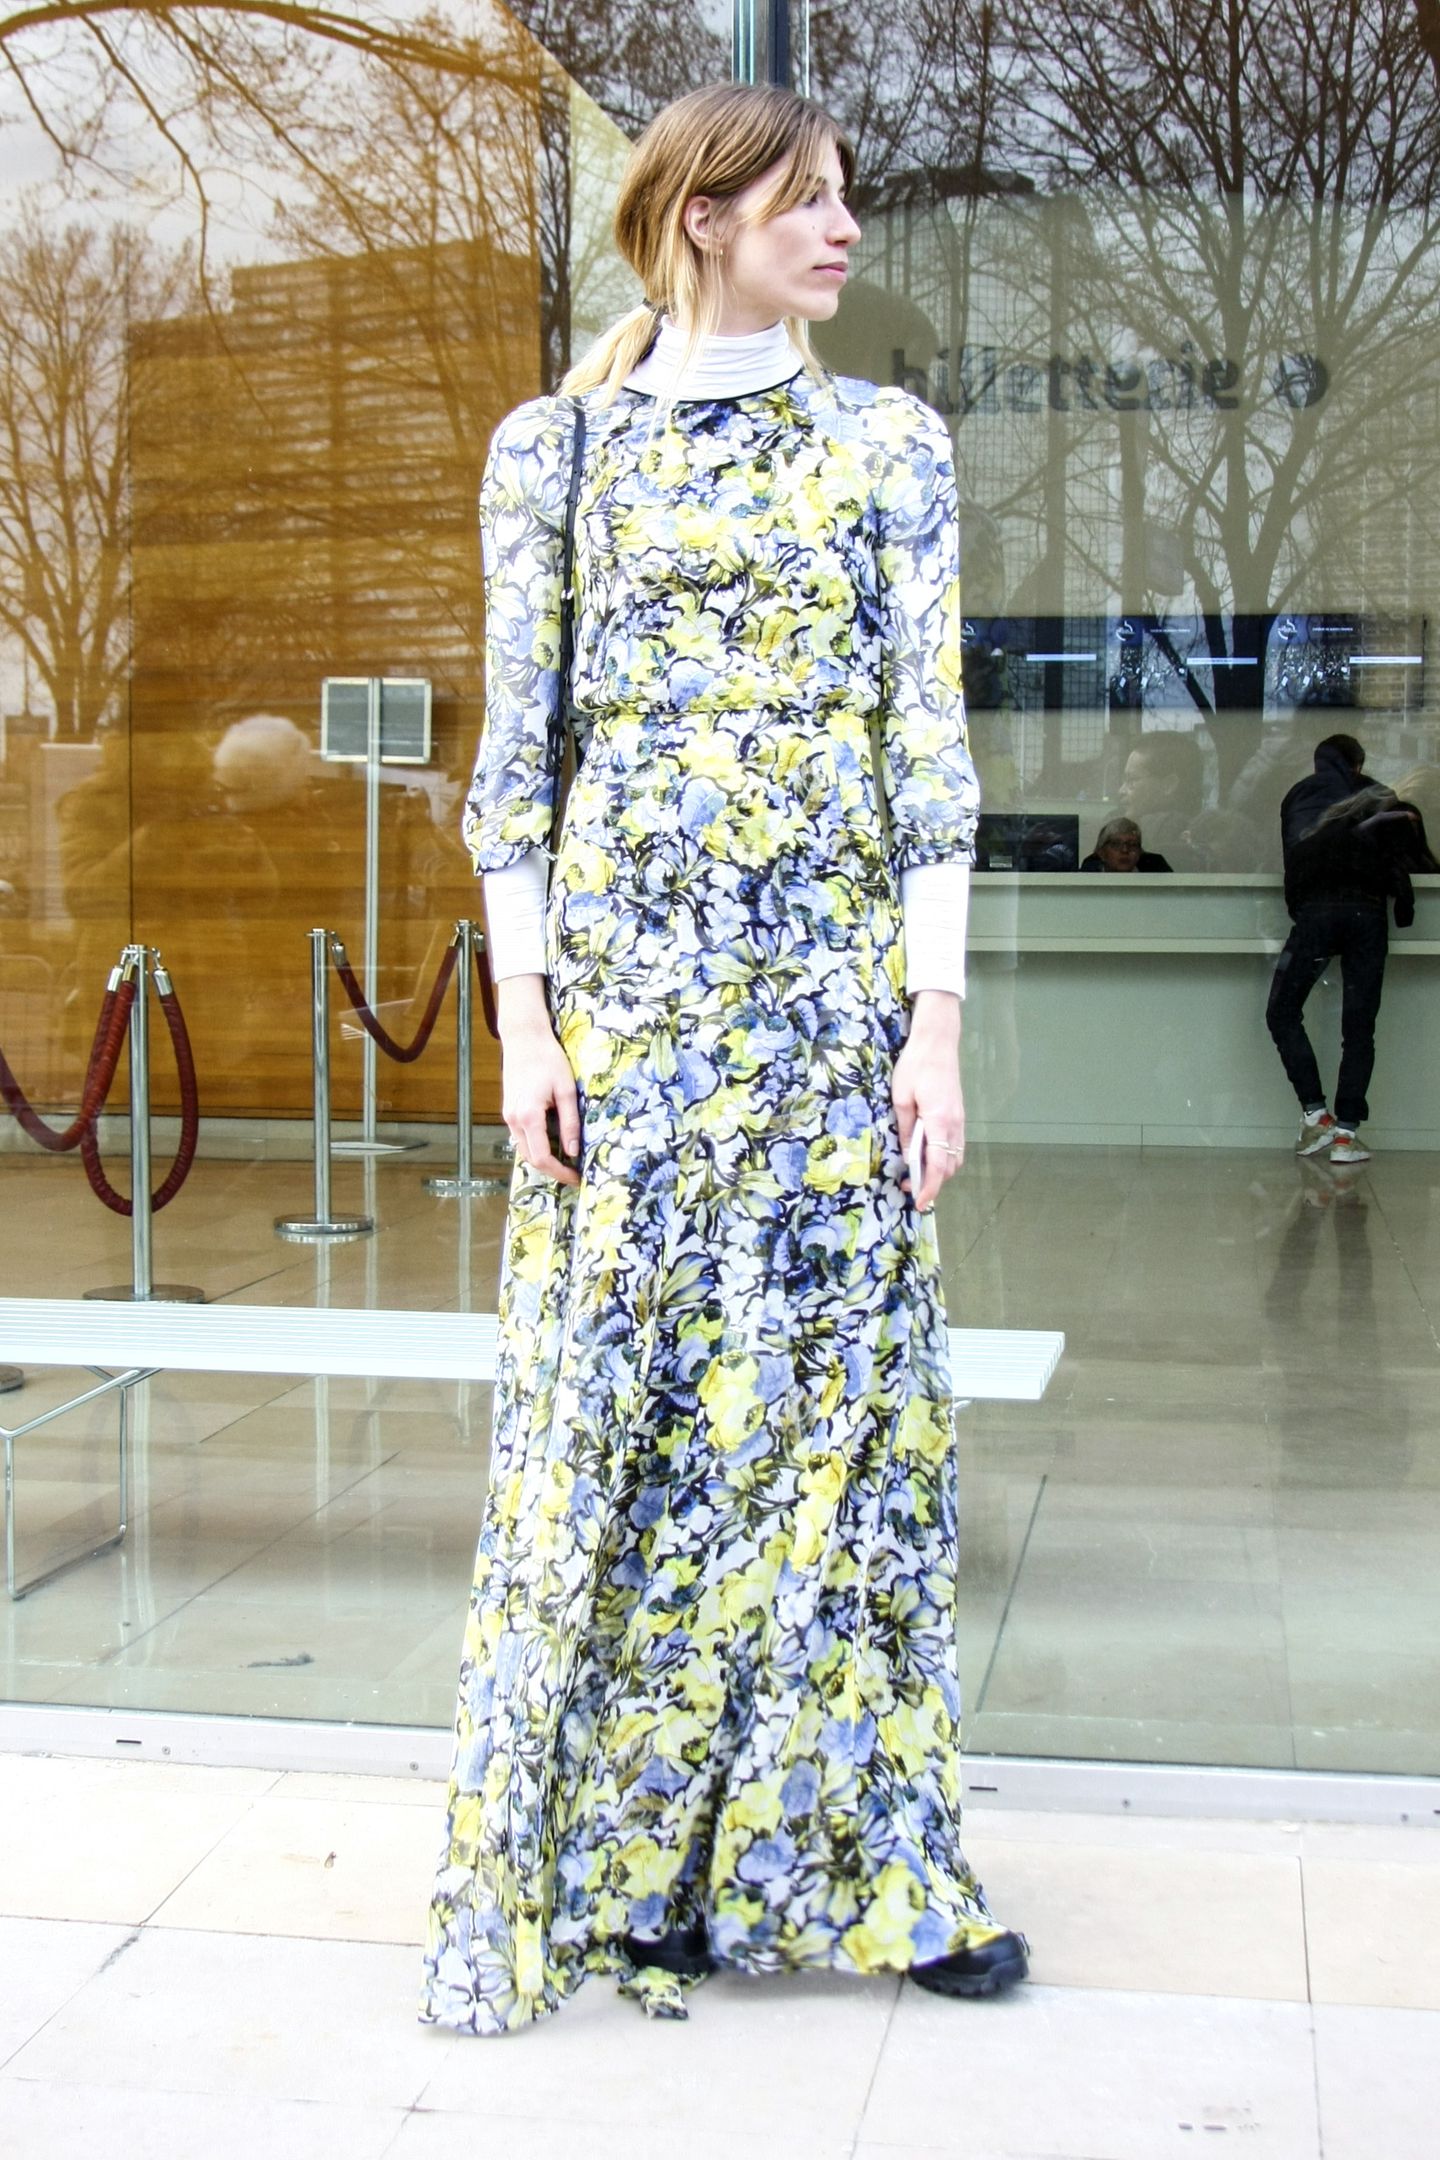 Blumen verwelken, Blumen-Prints vergehen nie! Stilikone Veronika Heiobrunner zeigt uns ihr bodenlanges, luftiges Kleid.